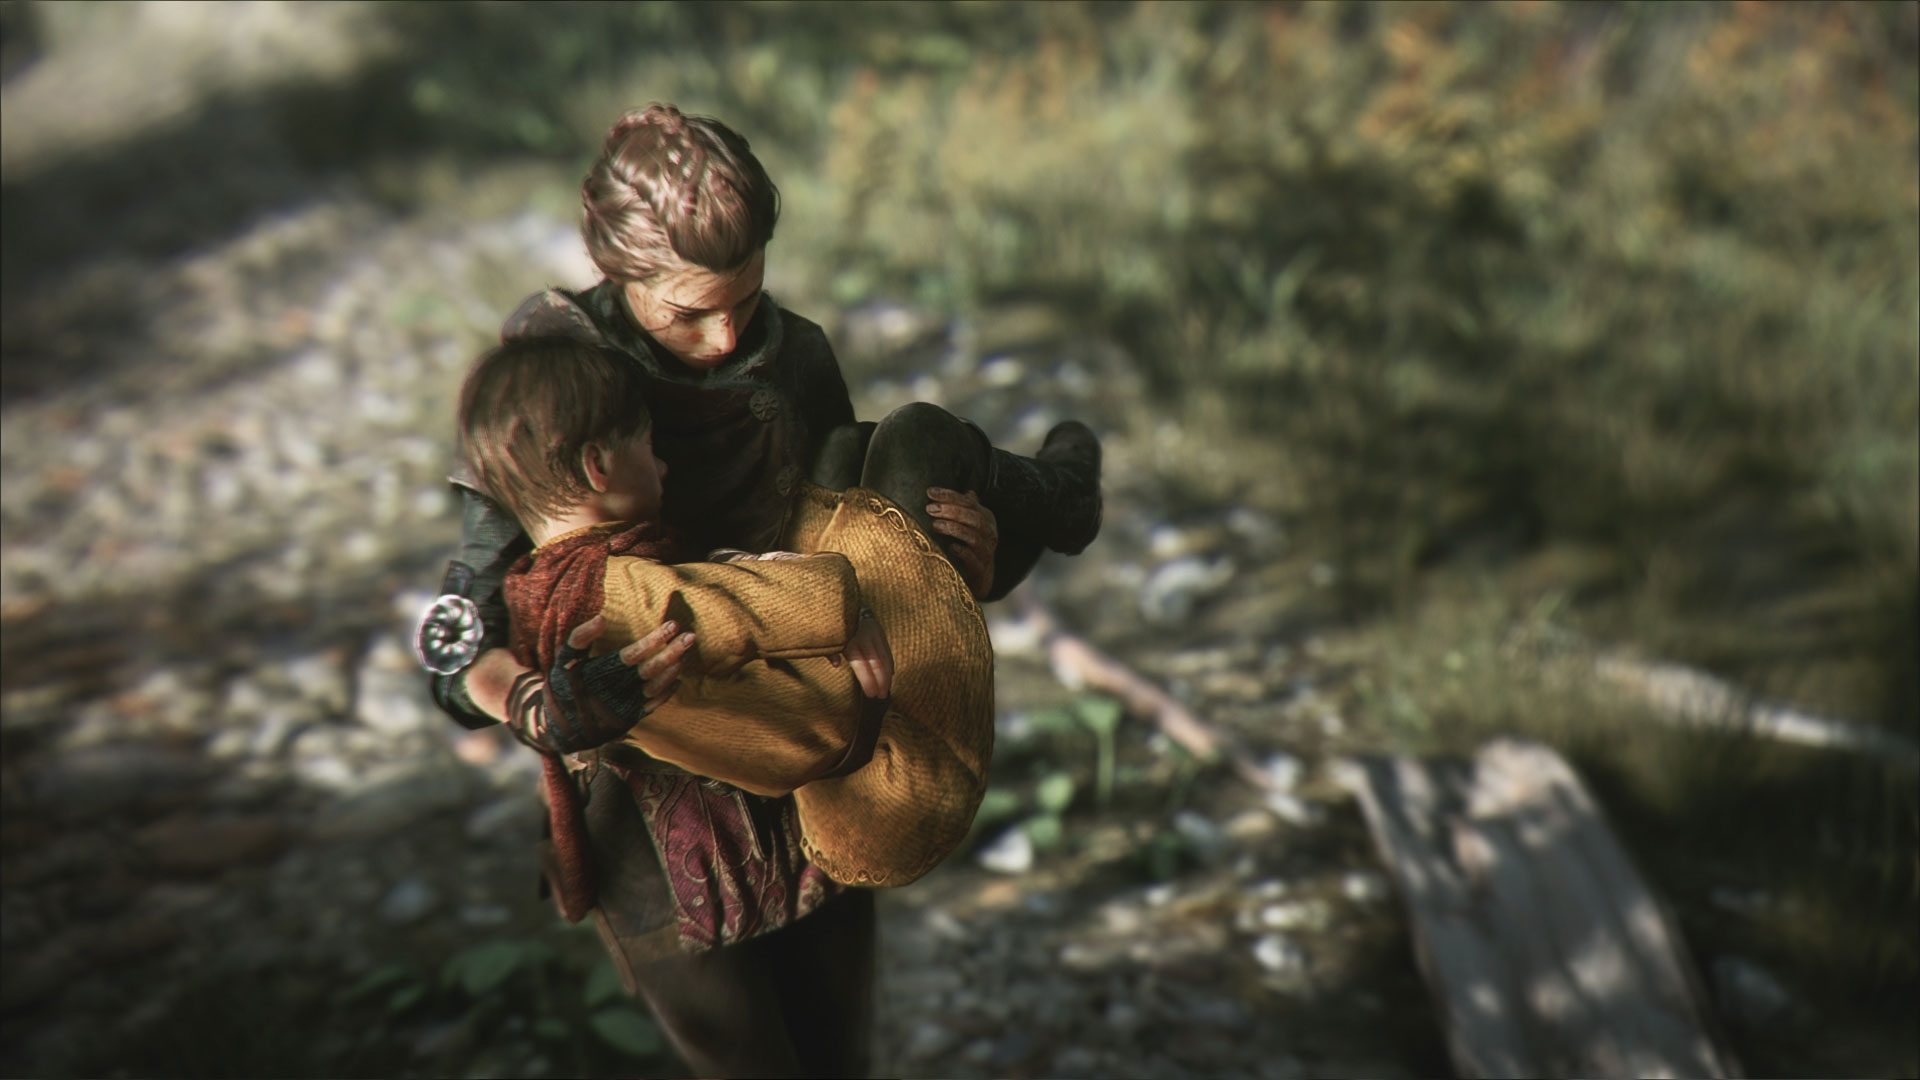 A Plague Tale: Innocence e Minit estão de graça na Epic Games